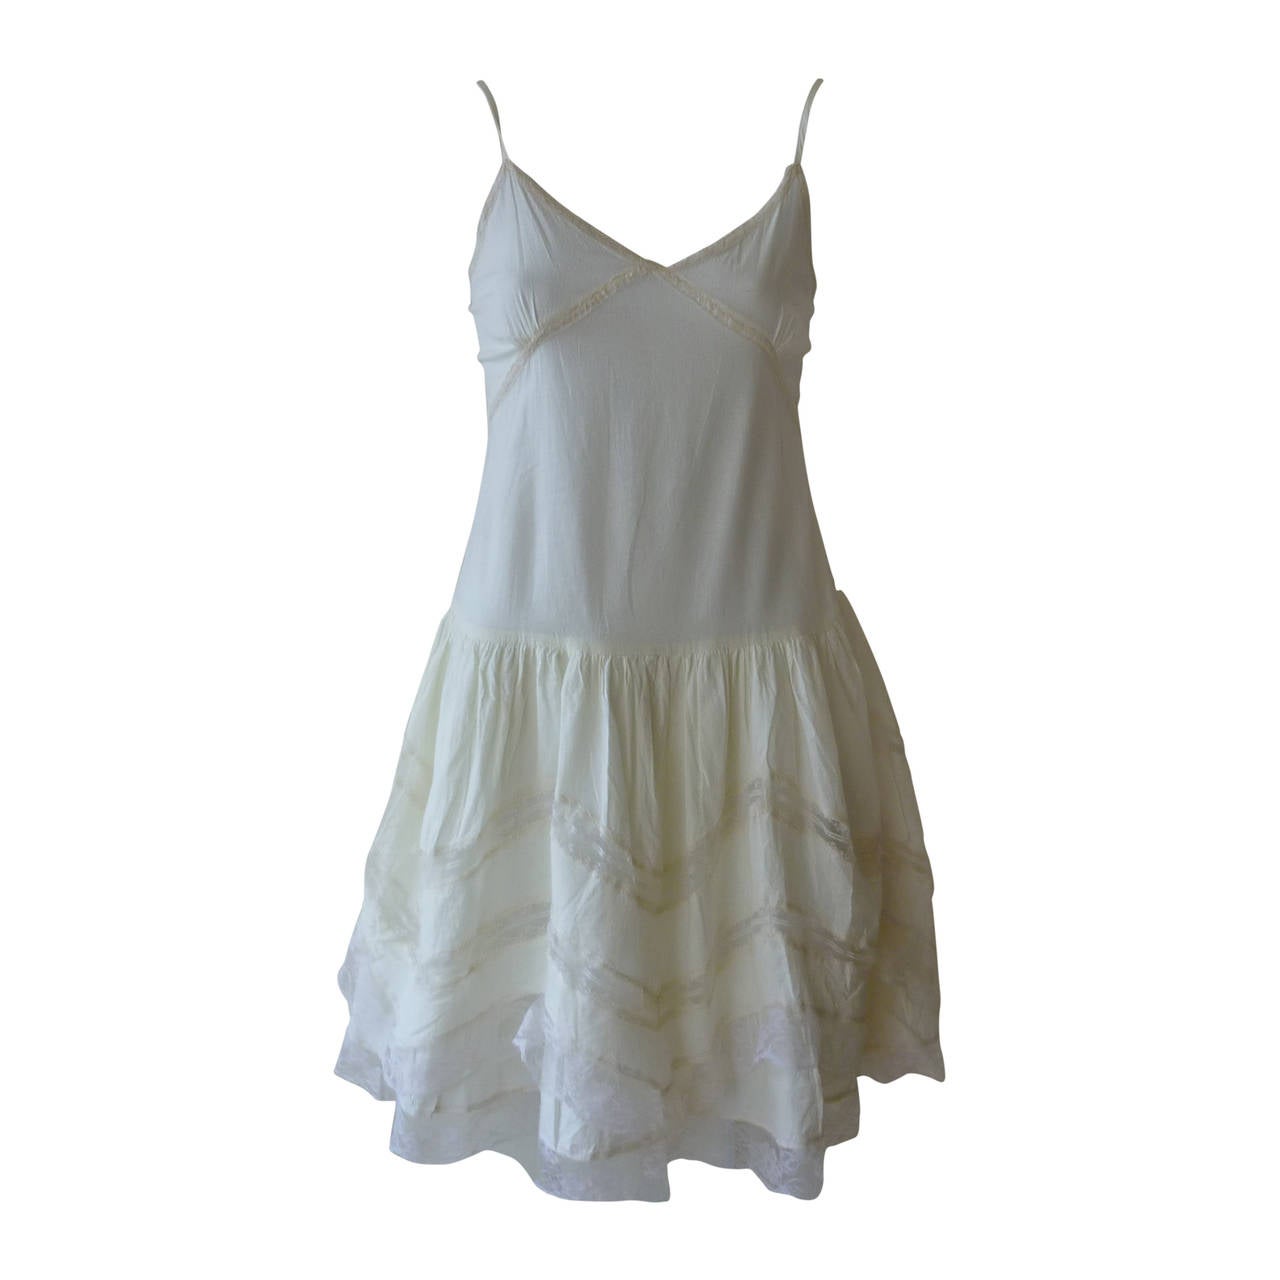 Miu Miu Cotton and Lace Dress